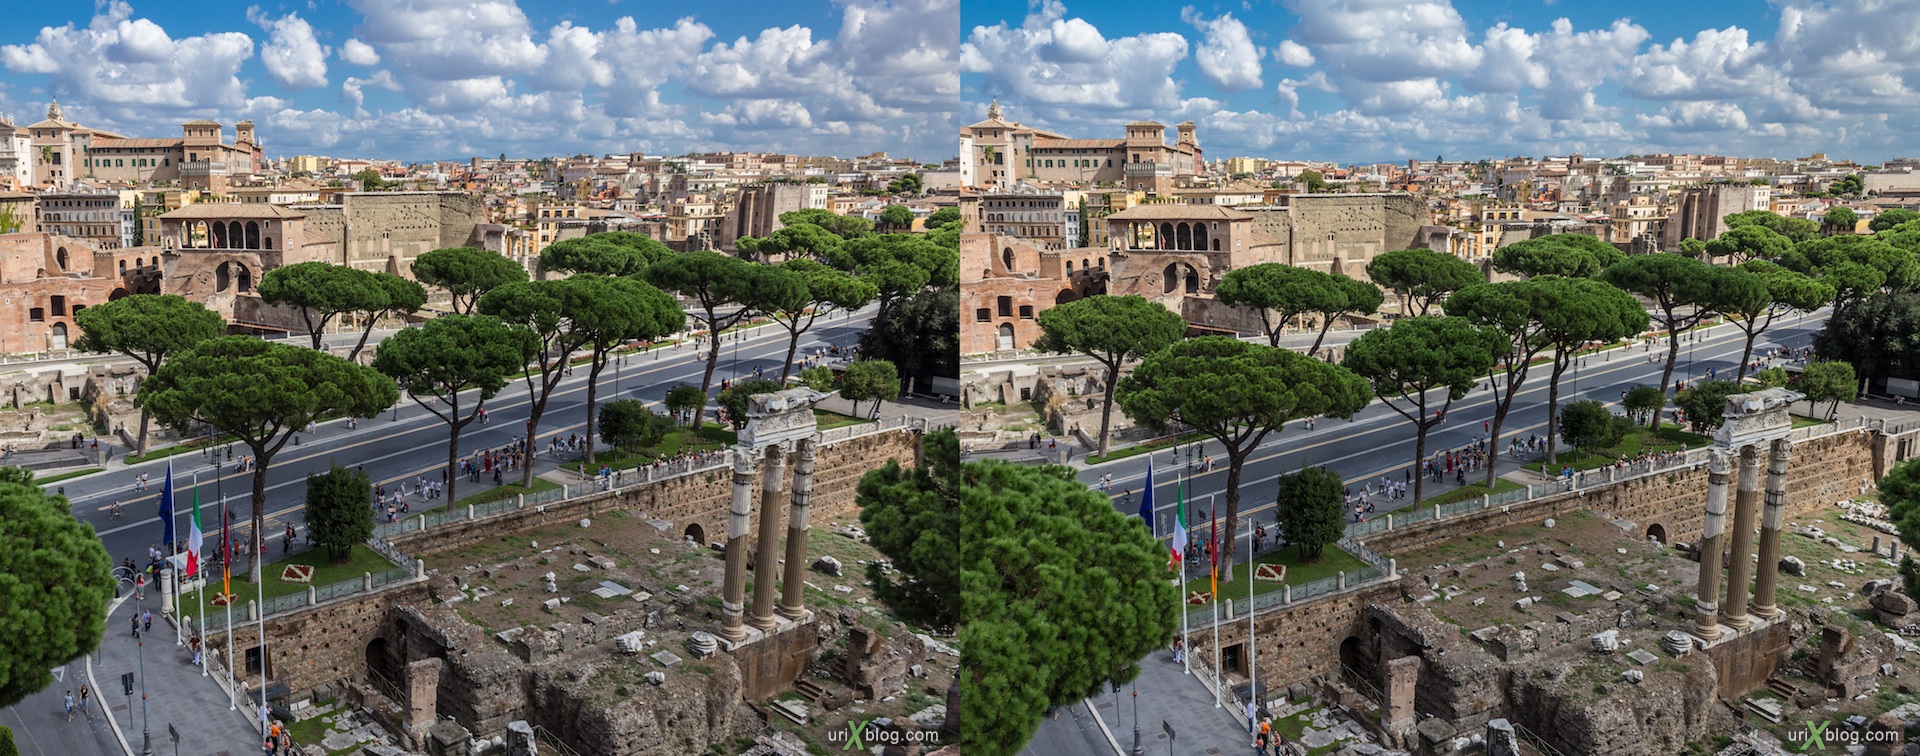 2012, форум Траяна, Римский форум, Палатинский холм, город, раскопки, древний Рим, Италия, 3D, перекрёстные стереопары, стерео, стереопара, стереопары